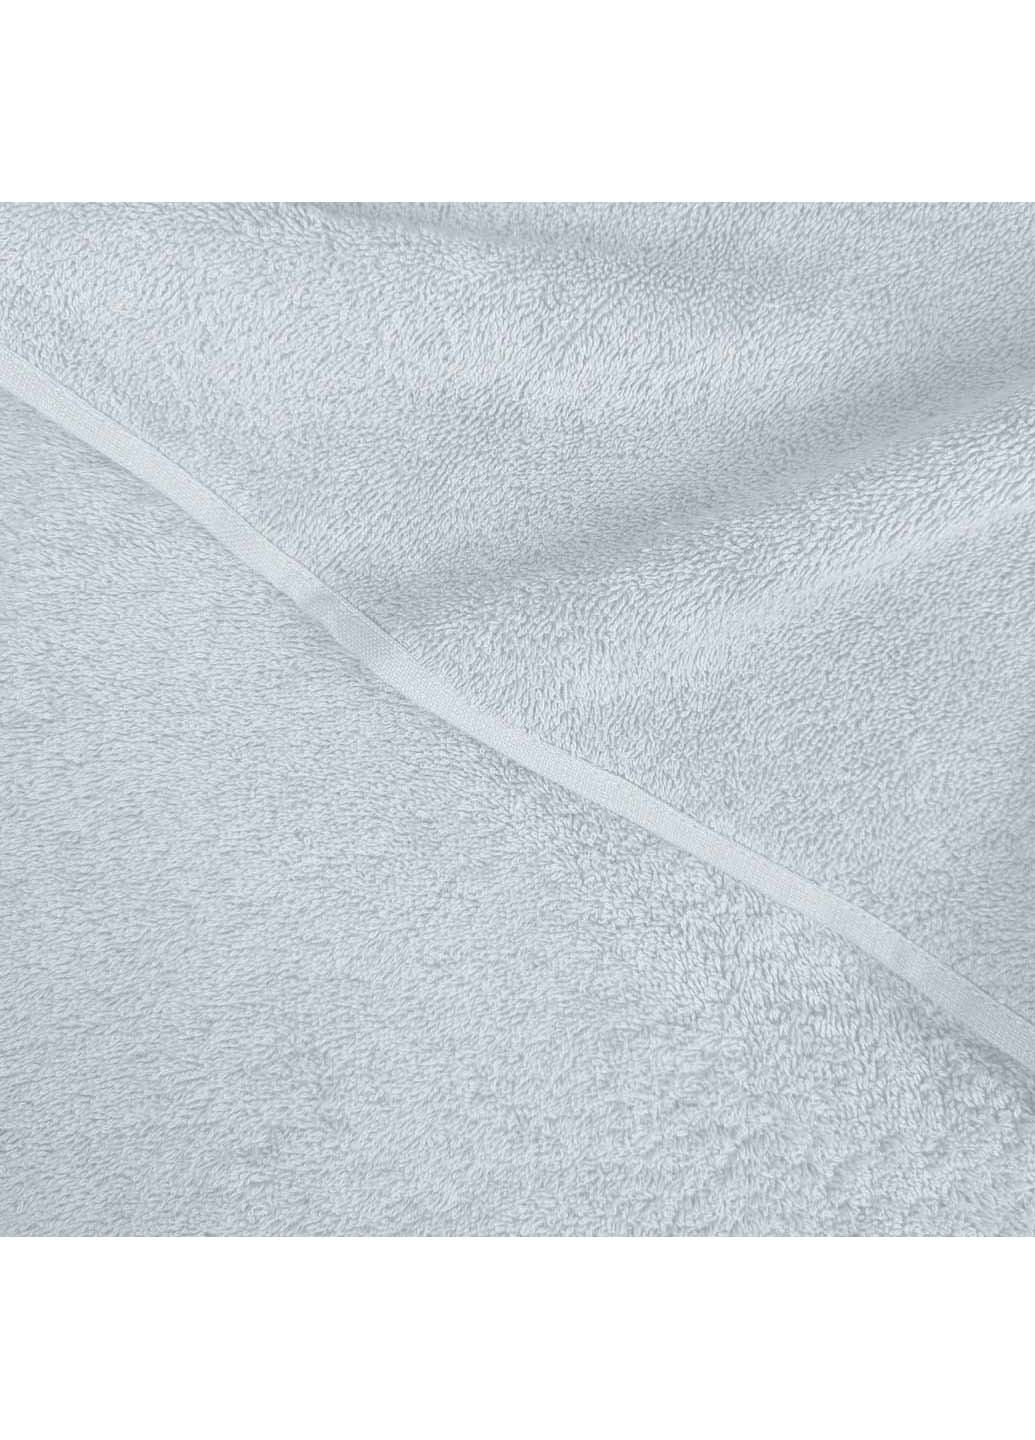 Cosas полотенце махровое 50х90 см белый производство -